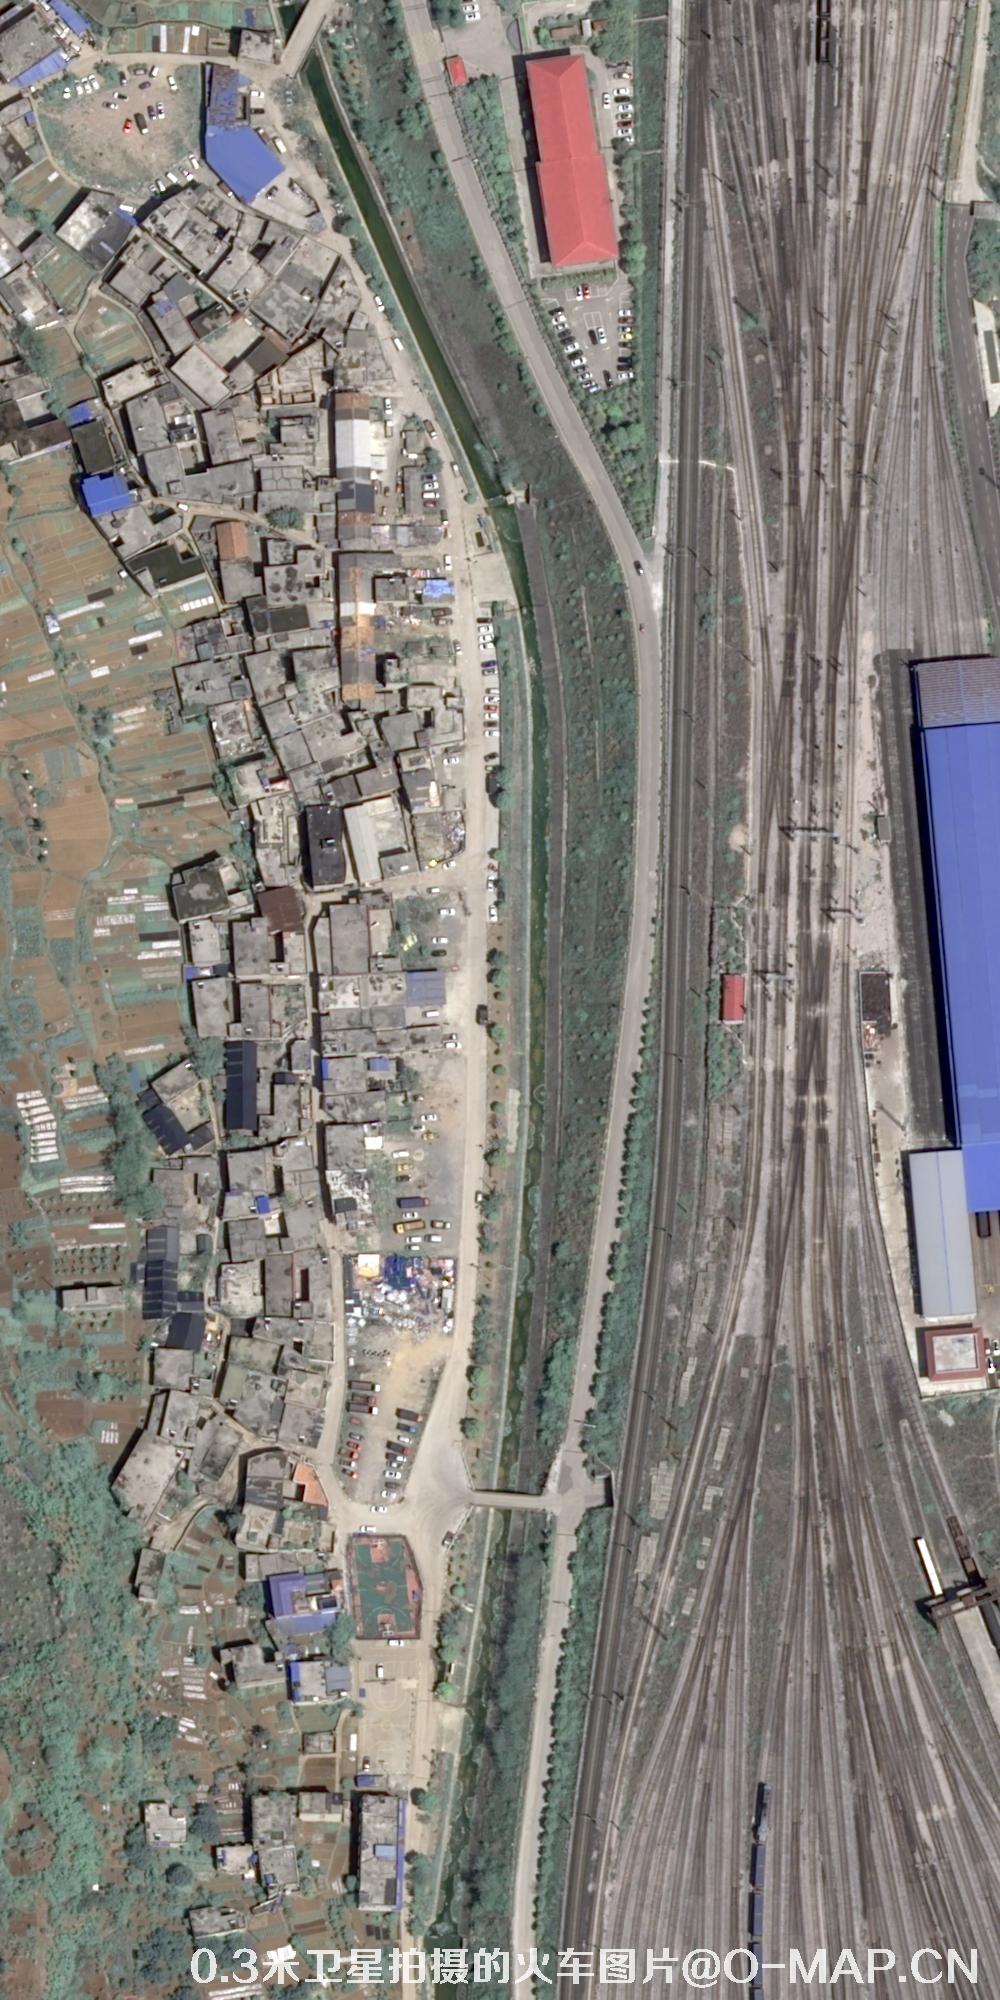 0.3米分辨率卫星拍摄的火车轨道高清图片